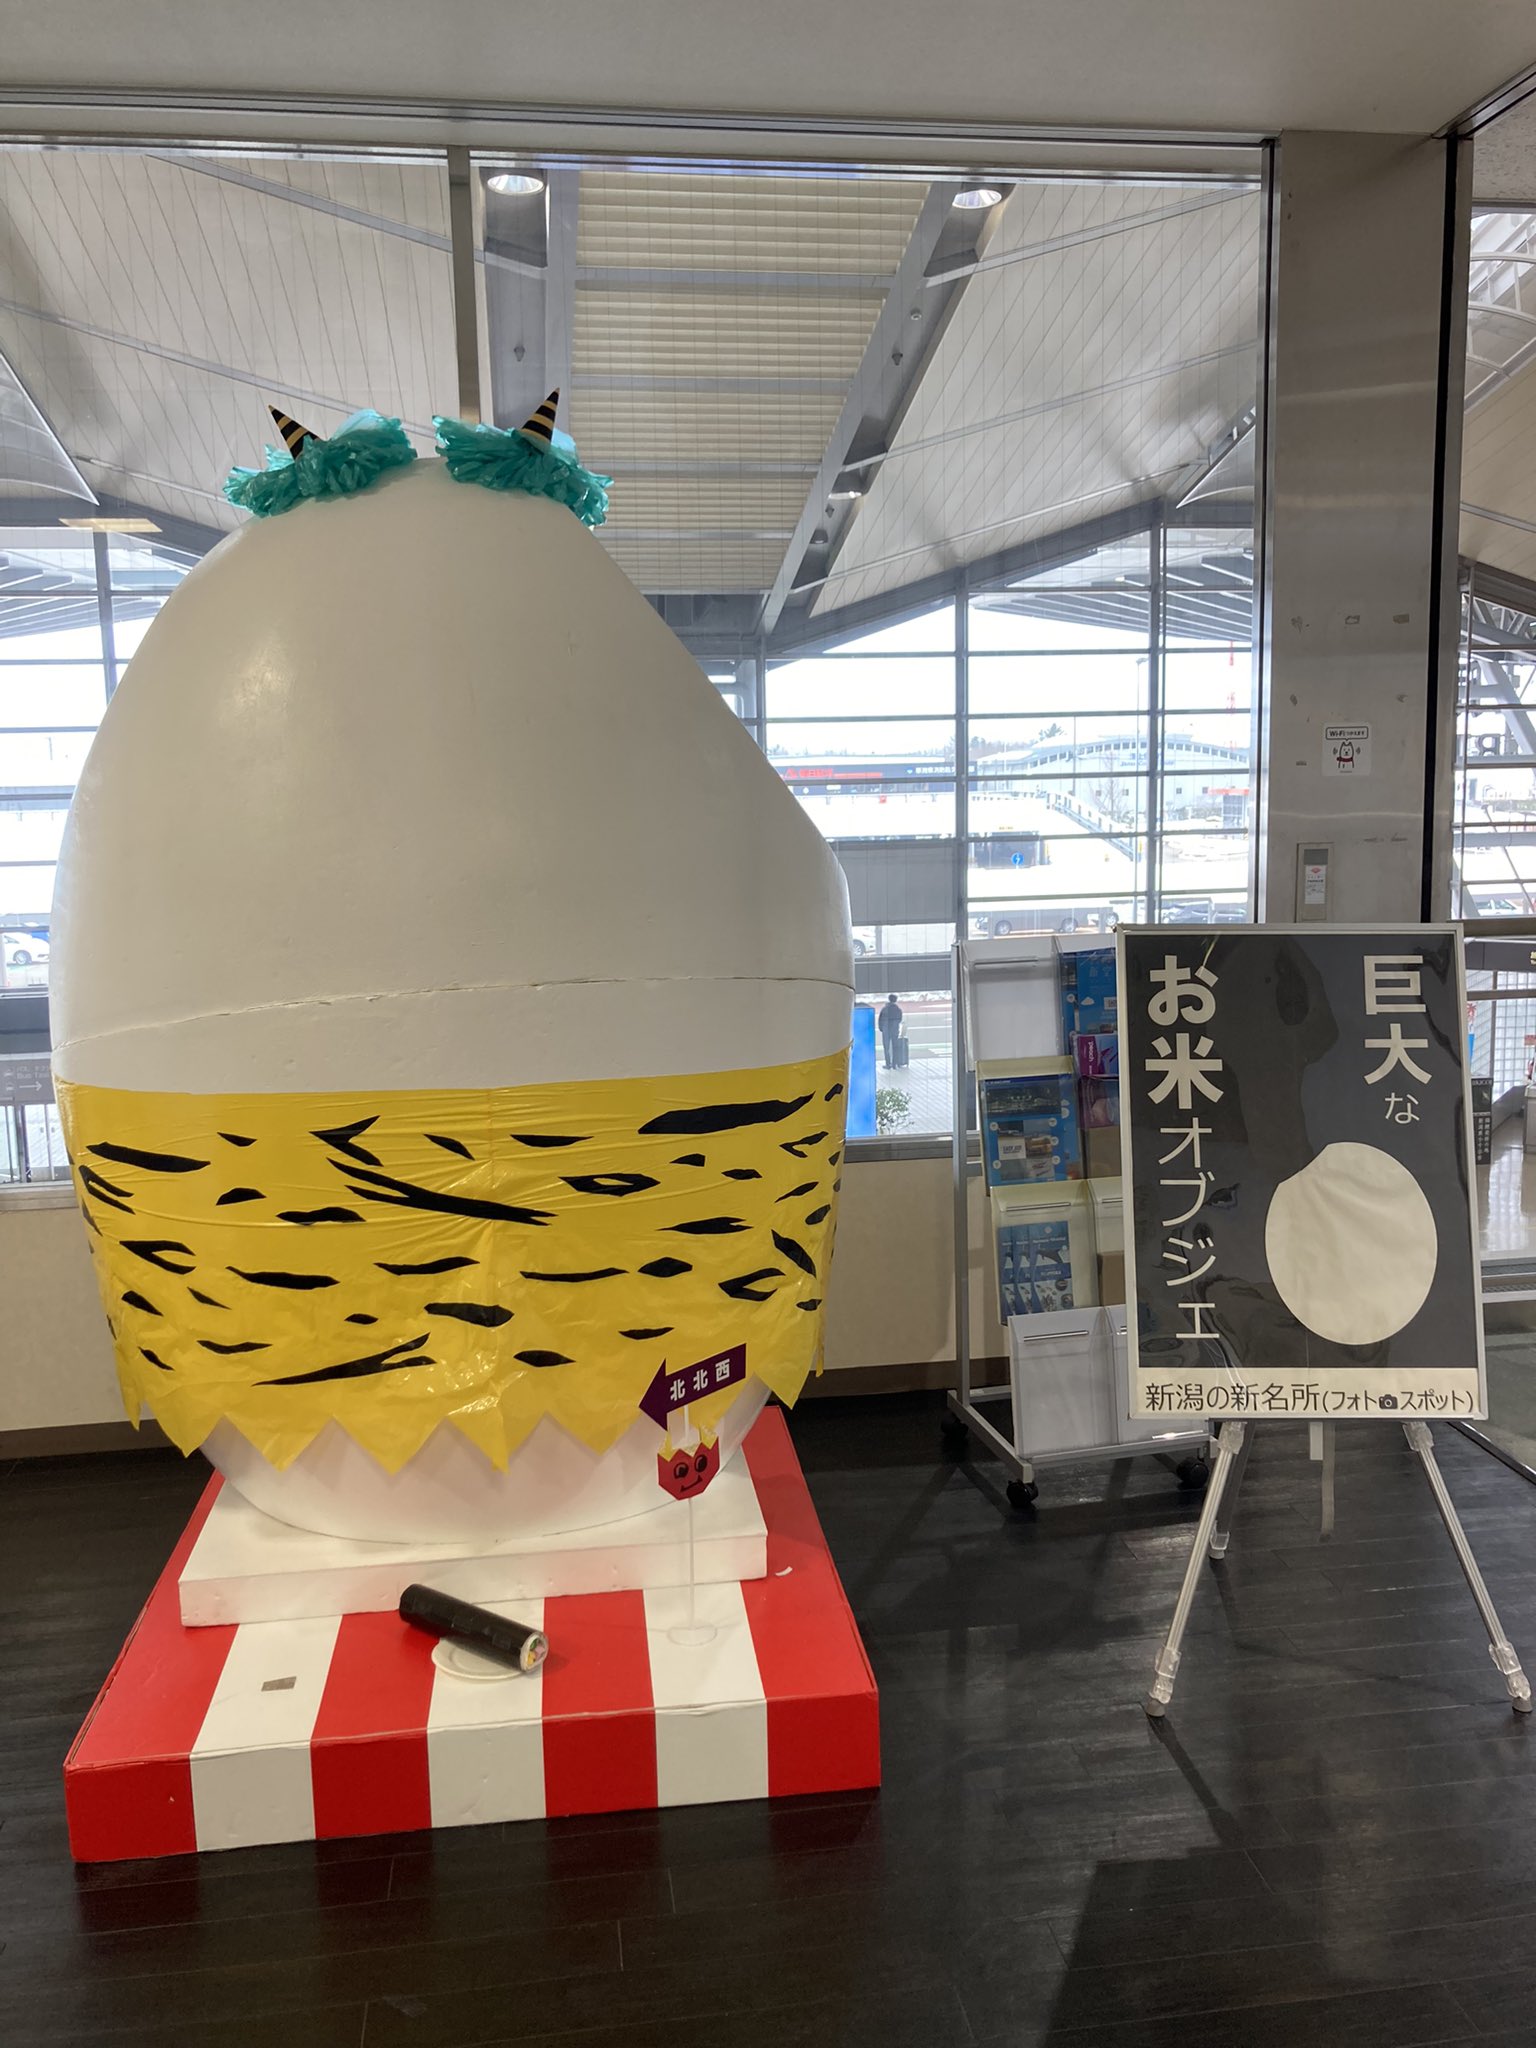 新潟空港 Niigata Airport Twitter